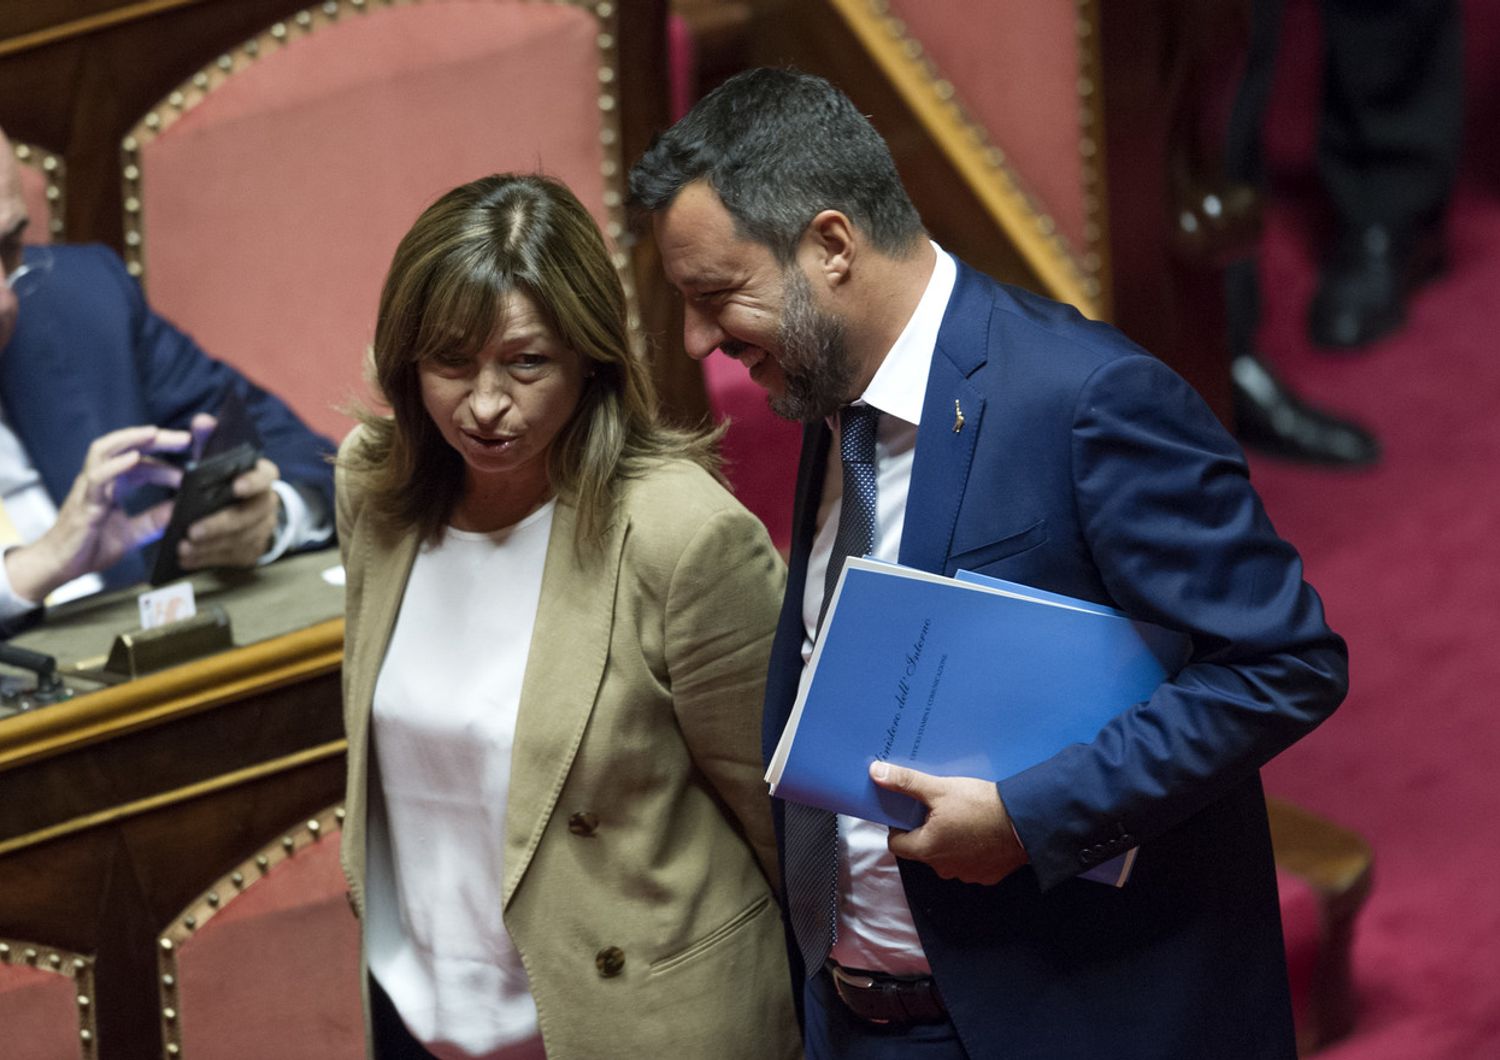 Donatella Tesei e Matteo Salvini